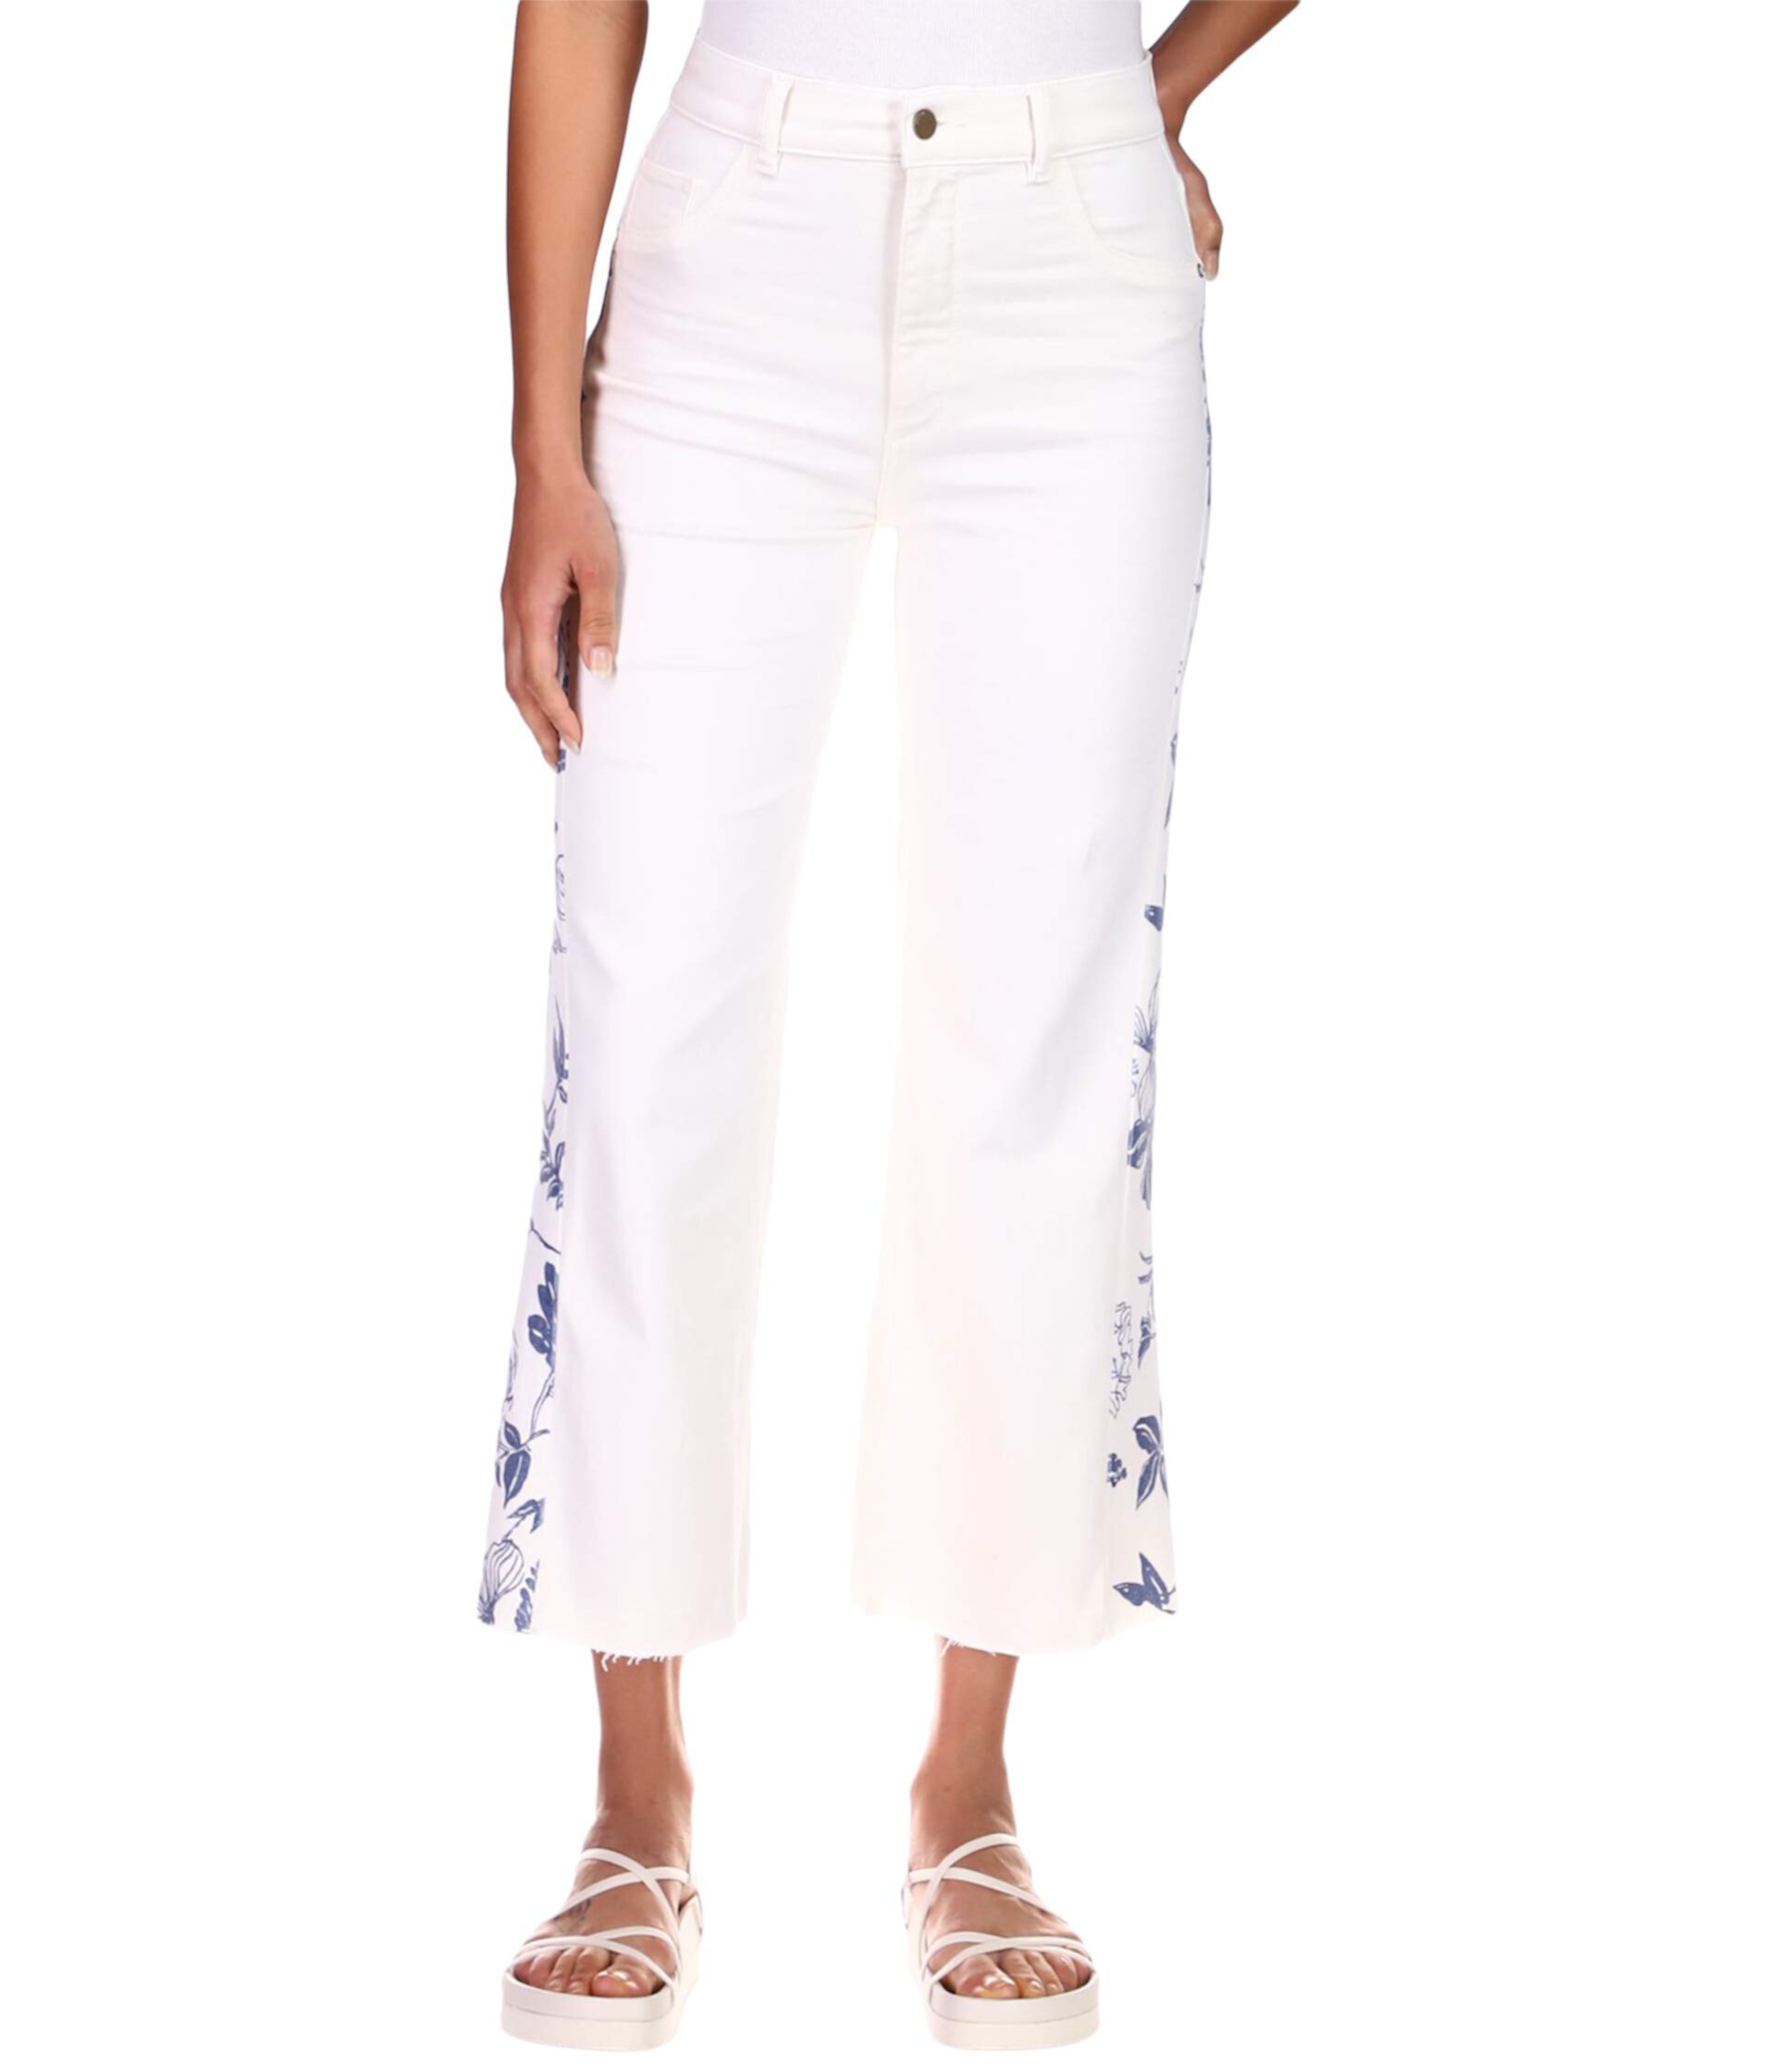 Винтаж: широкие брюки с высокой посадкой Hepburn в цвете Fleur Mixed DL1961